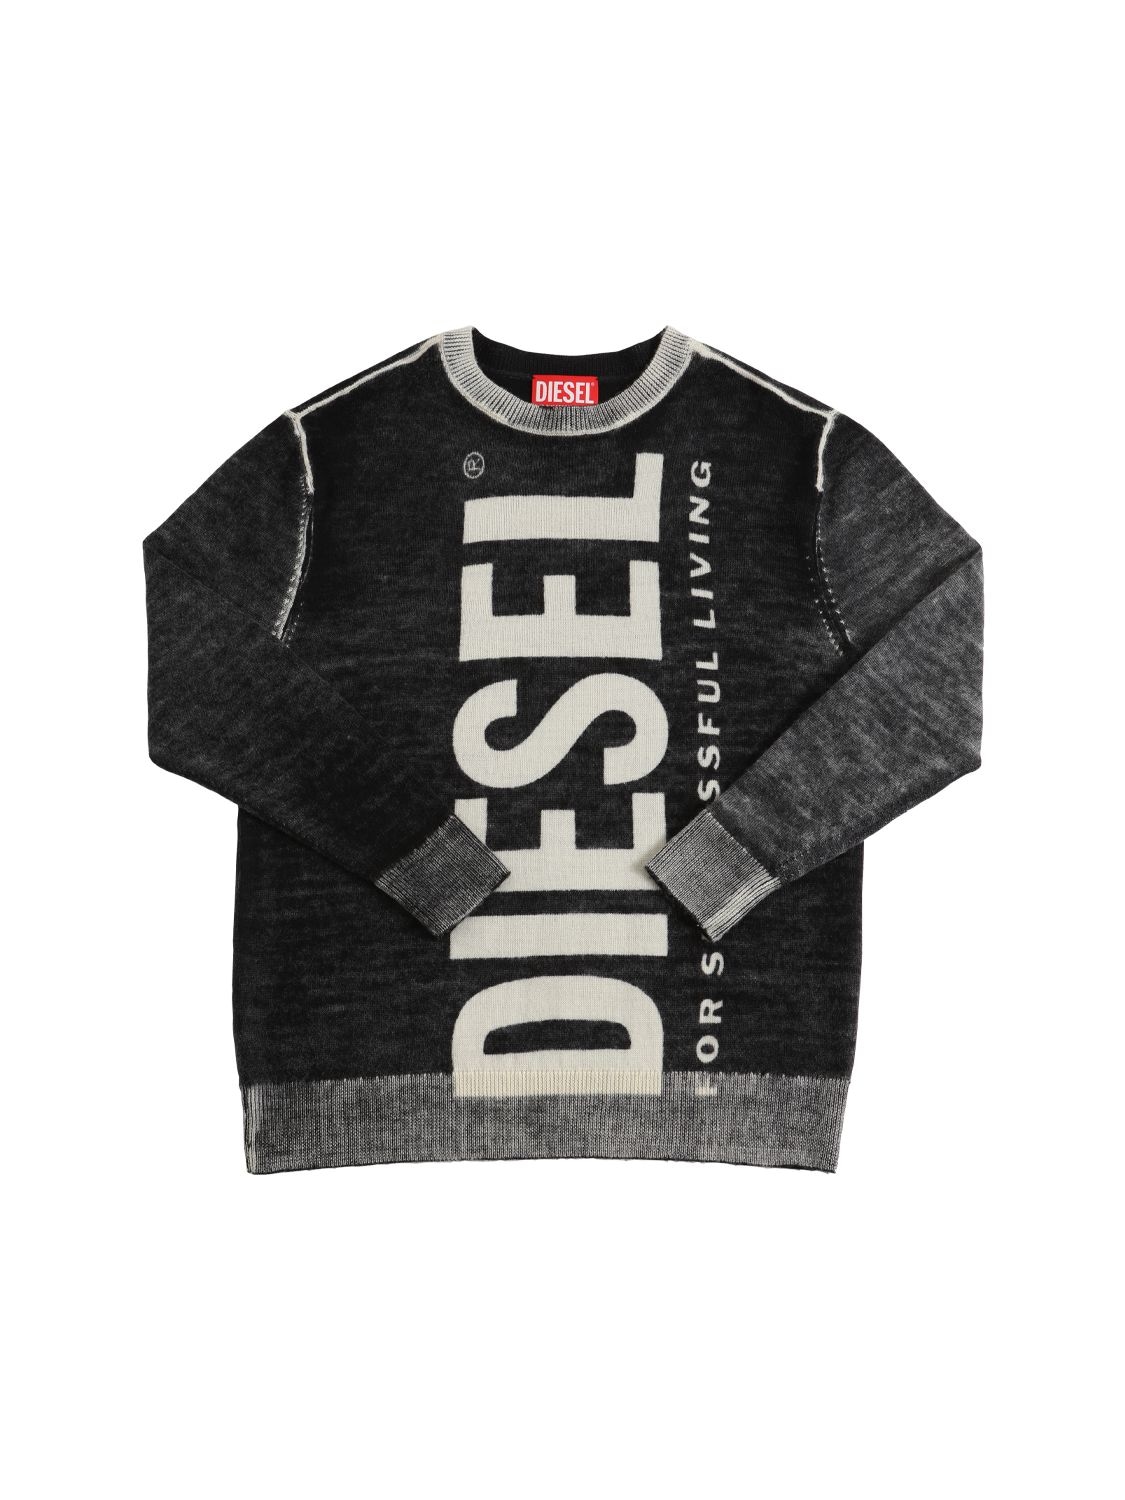 Diesel Kids' Washed Wool Knit Sweater W/logo In Black